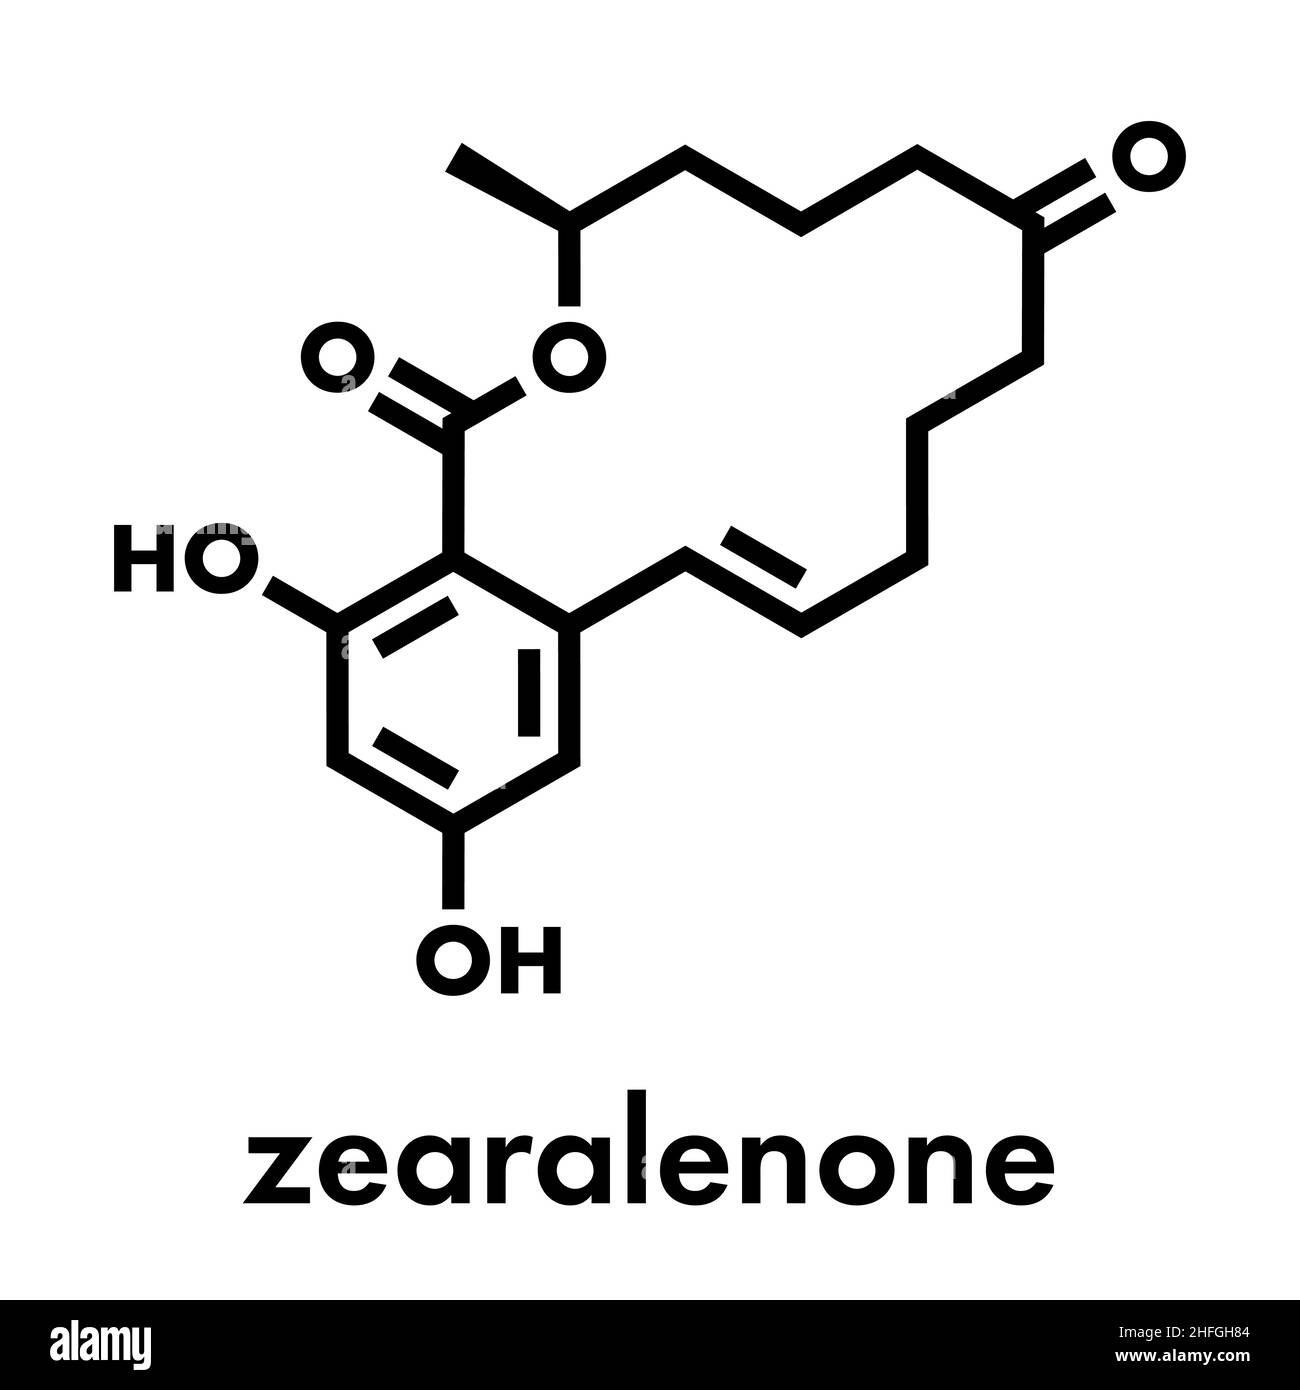 Zearalenone (ZEN) mycotoxin molecule. Produced by some Fusarium and Gibberella species. Skeletal formula. Stock Vector